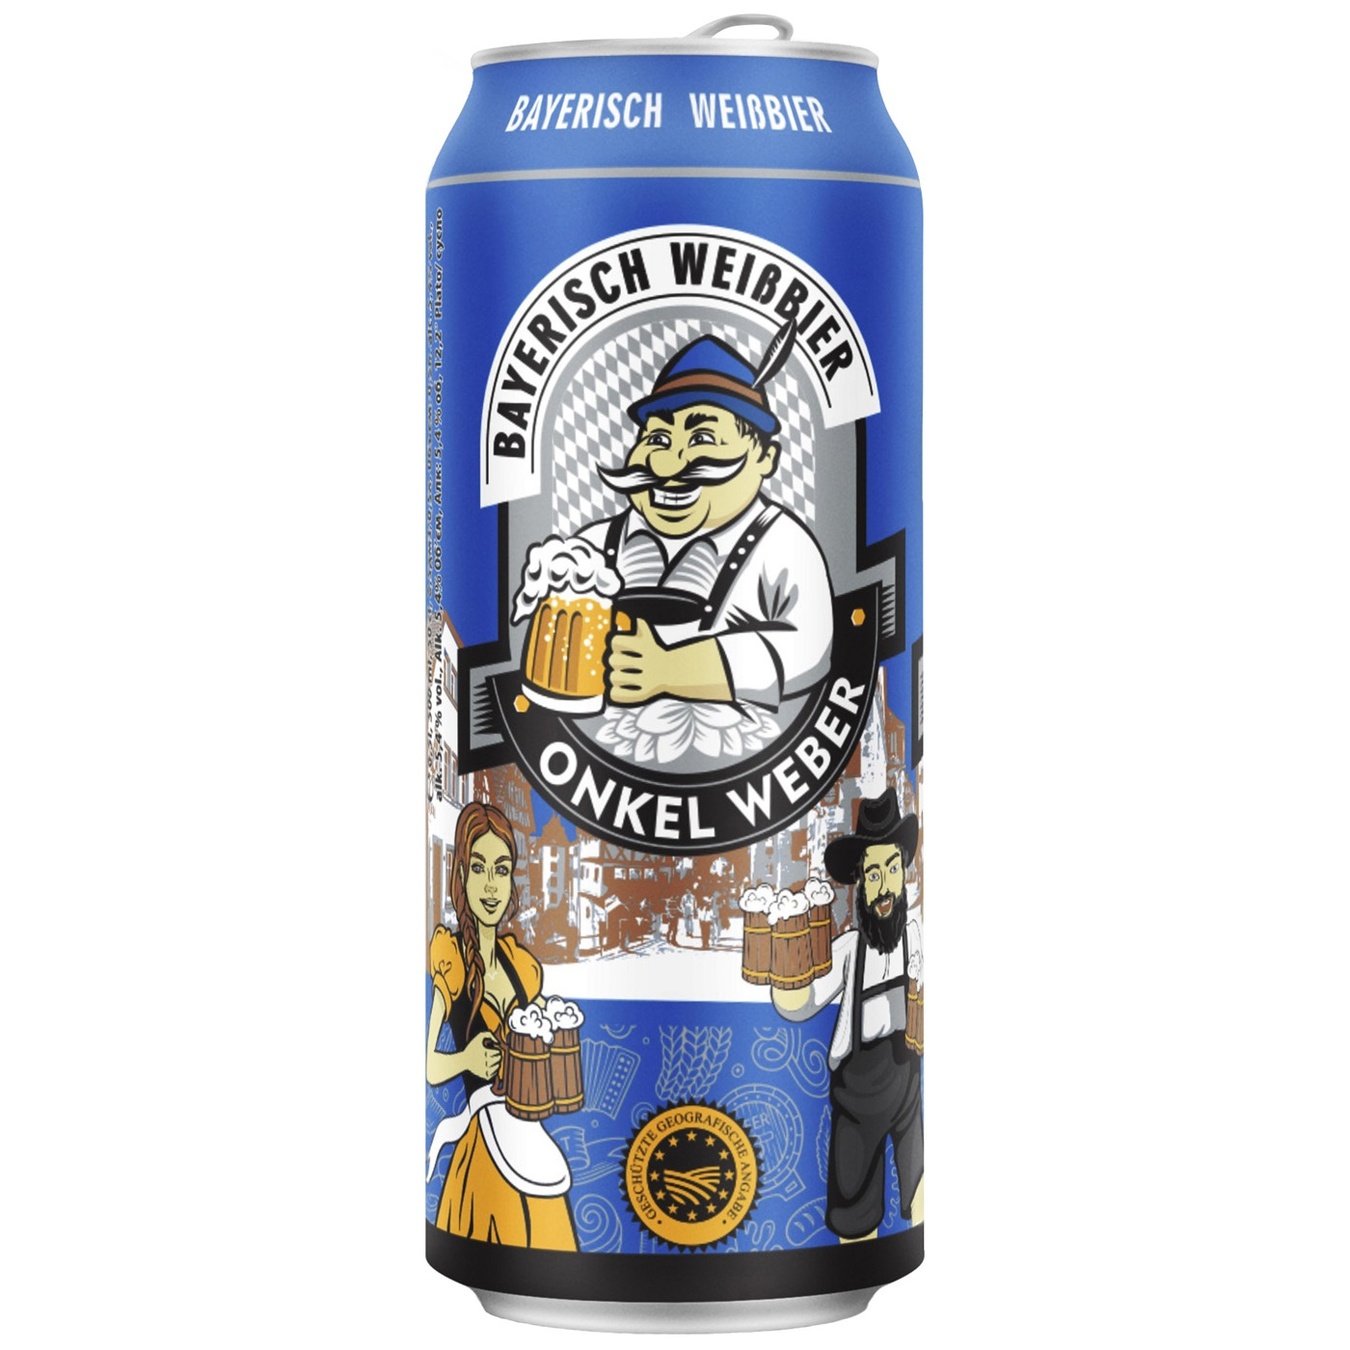 Пиво світле Onkel Weber Bayerisch Weissbier 5,4% 0,5л залізна банка